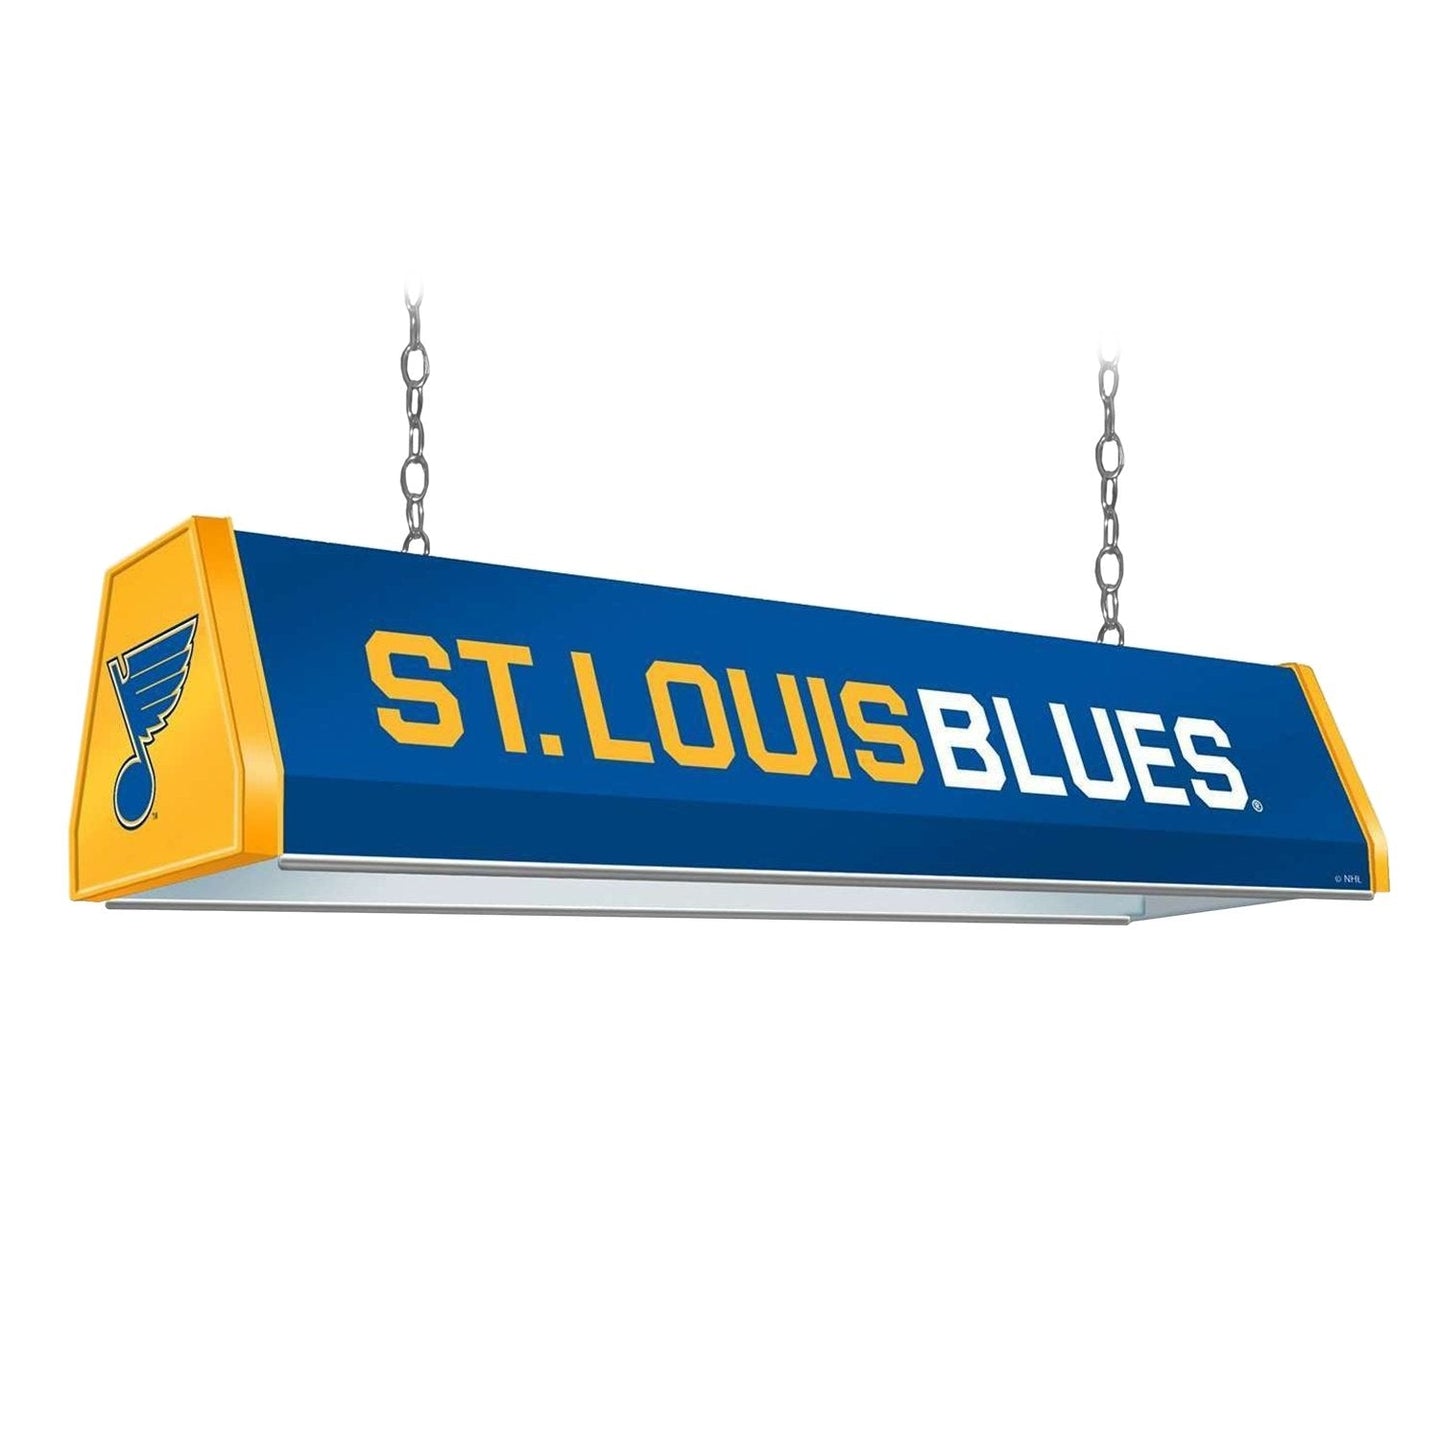 St. Louis Blues: Standard Pool Table Light - The Fan-Brand